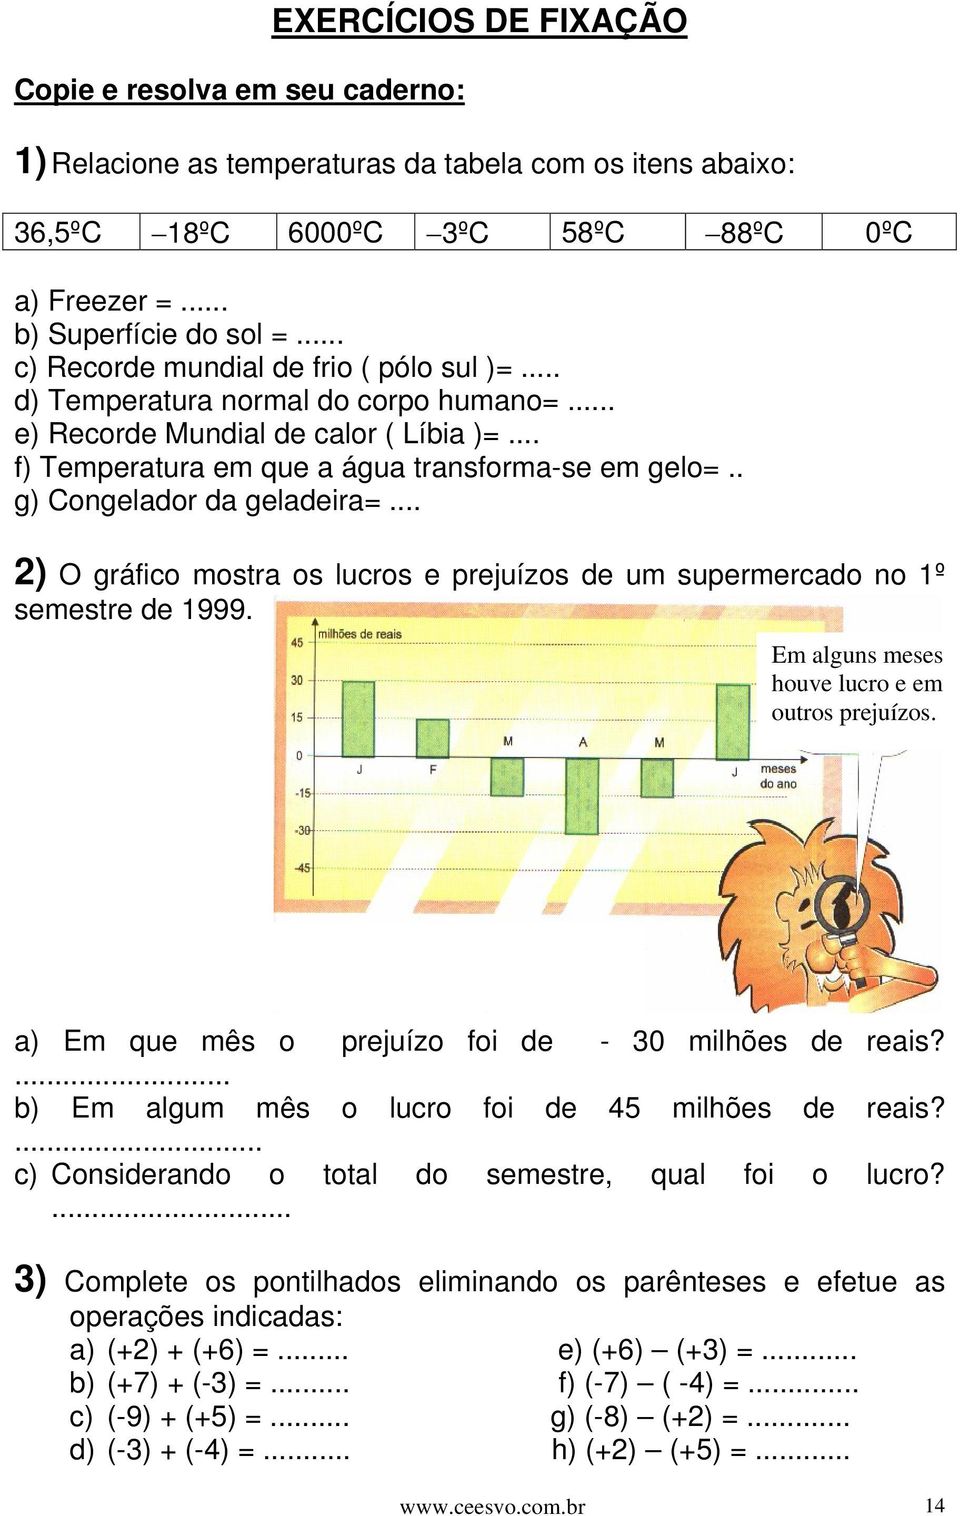 . g) Congelador da geladeira=... 2) O gráfico mostra os lucros e prejuízos de um supermercado no 1º semestre de 1999. Em alguns meses houve lucro e em outros prejuízos.